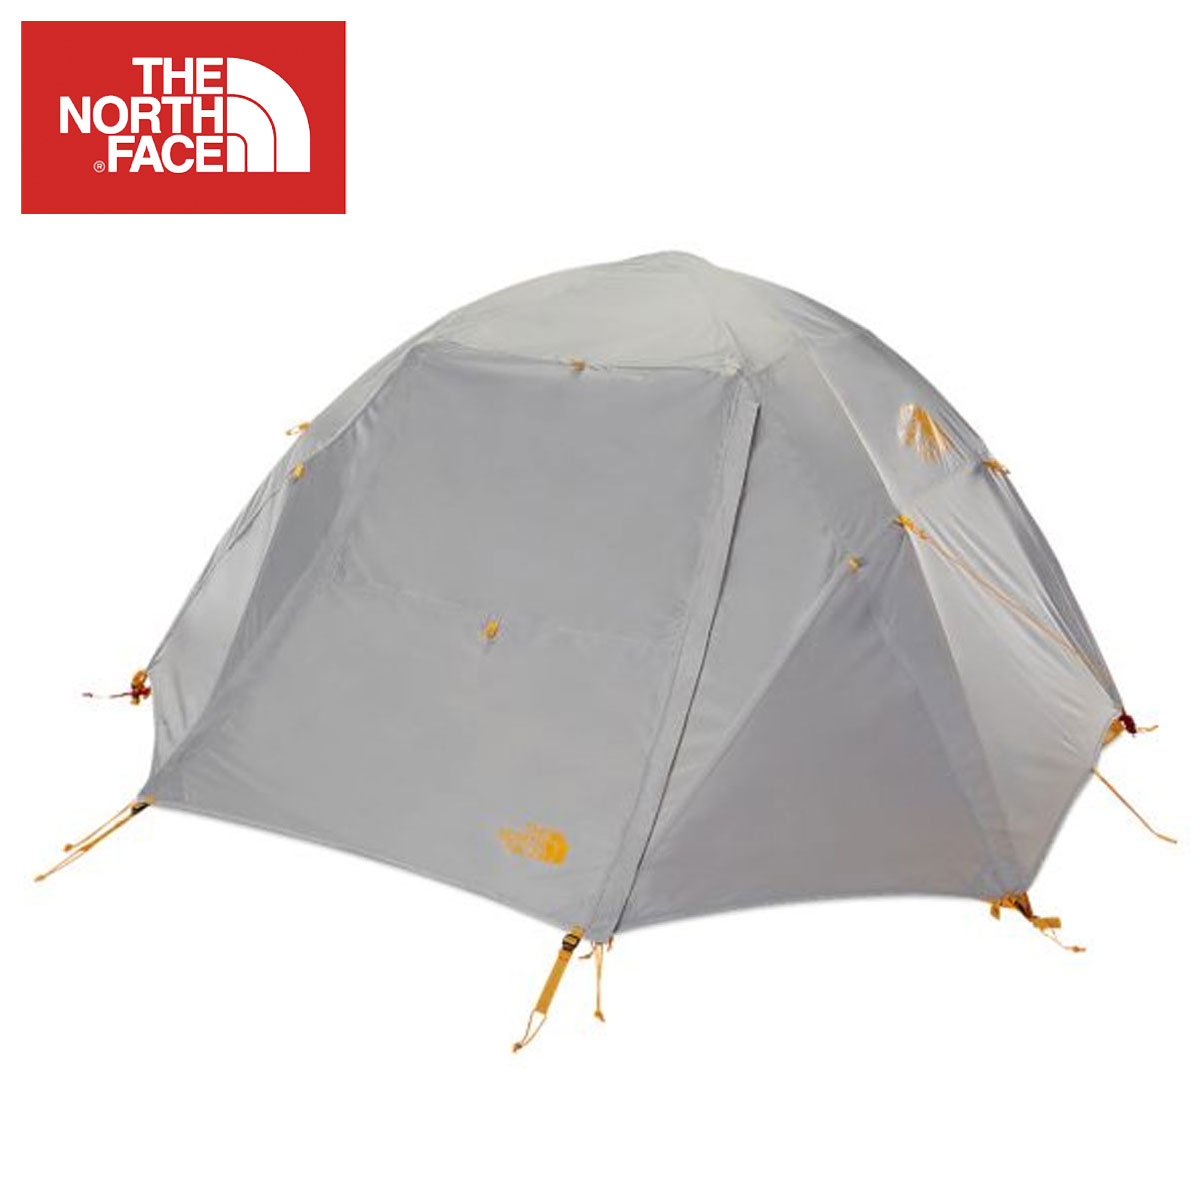 the north face stormbreak 3 tent